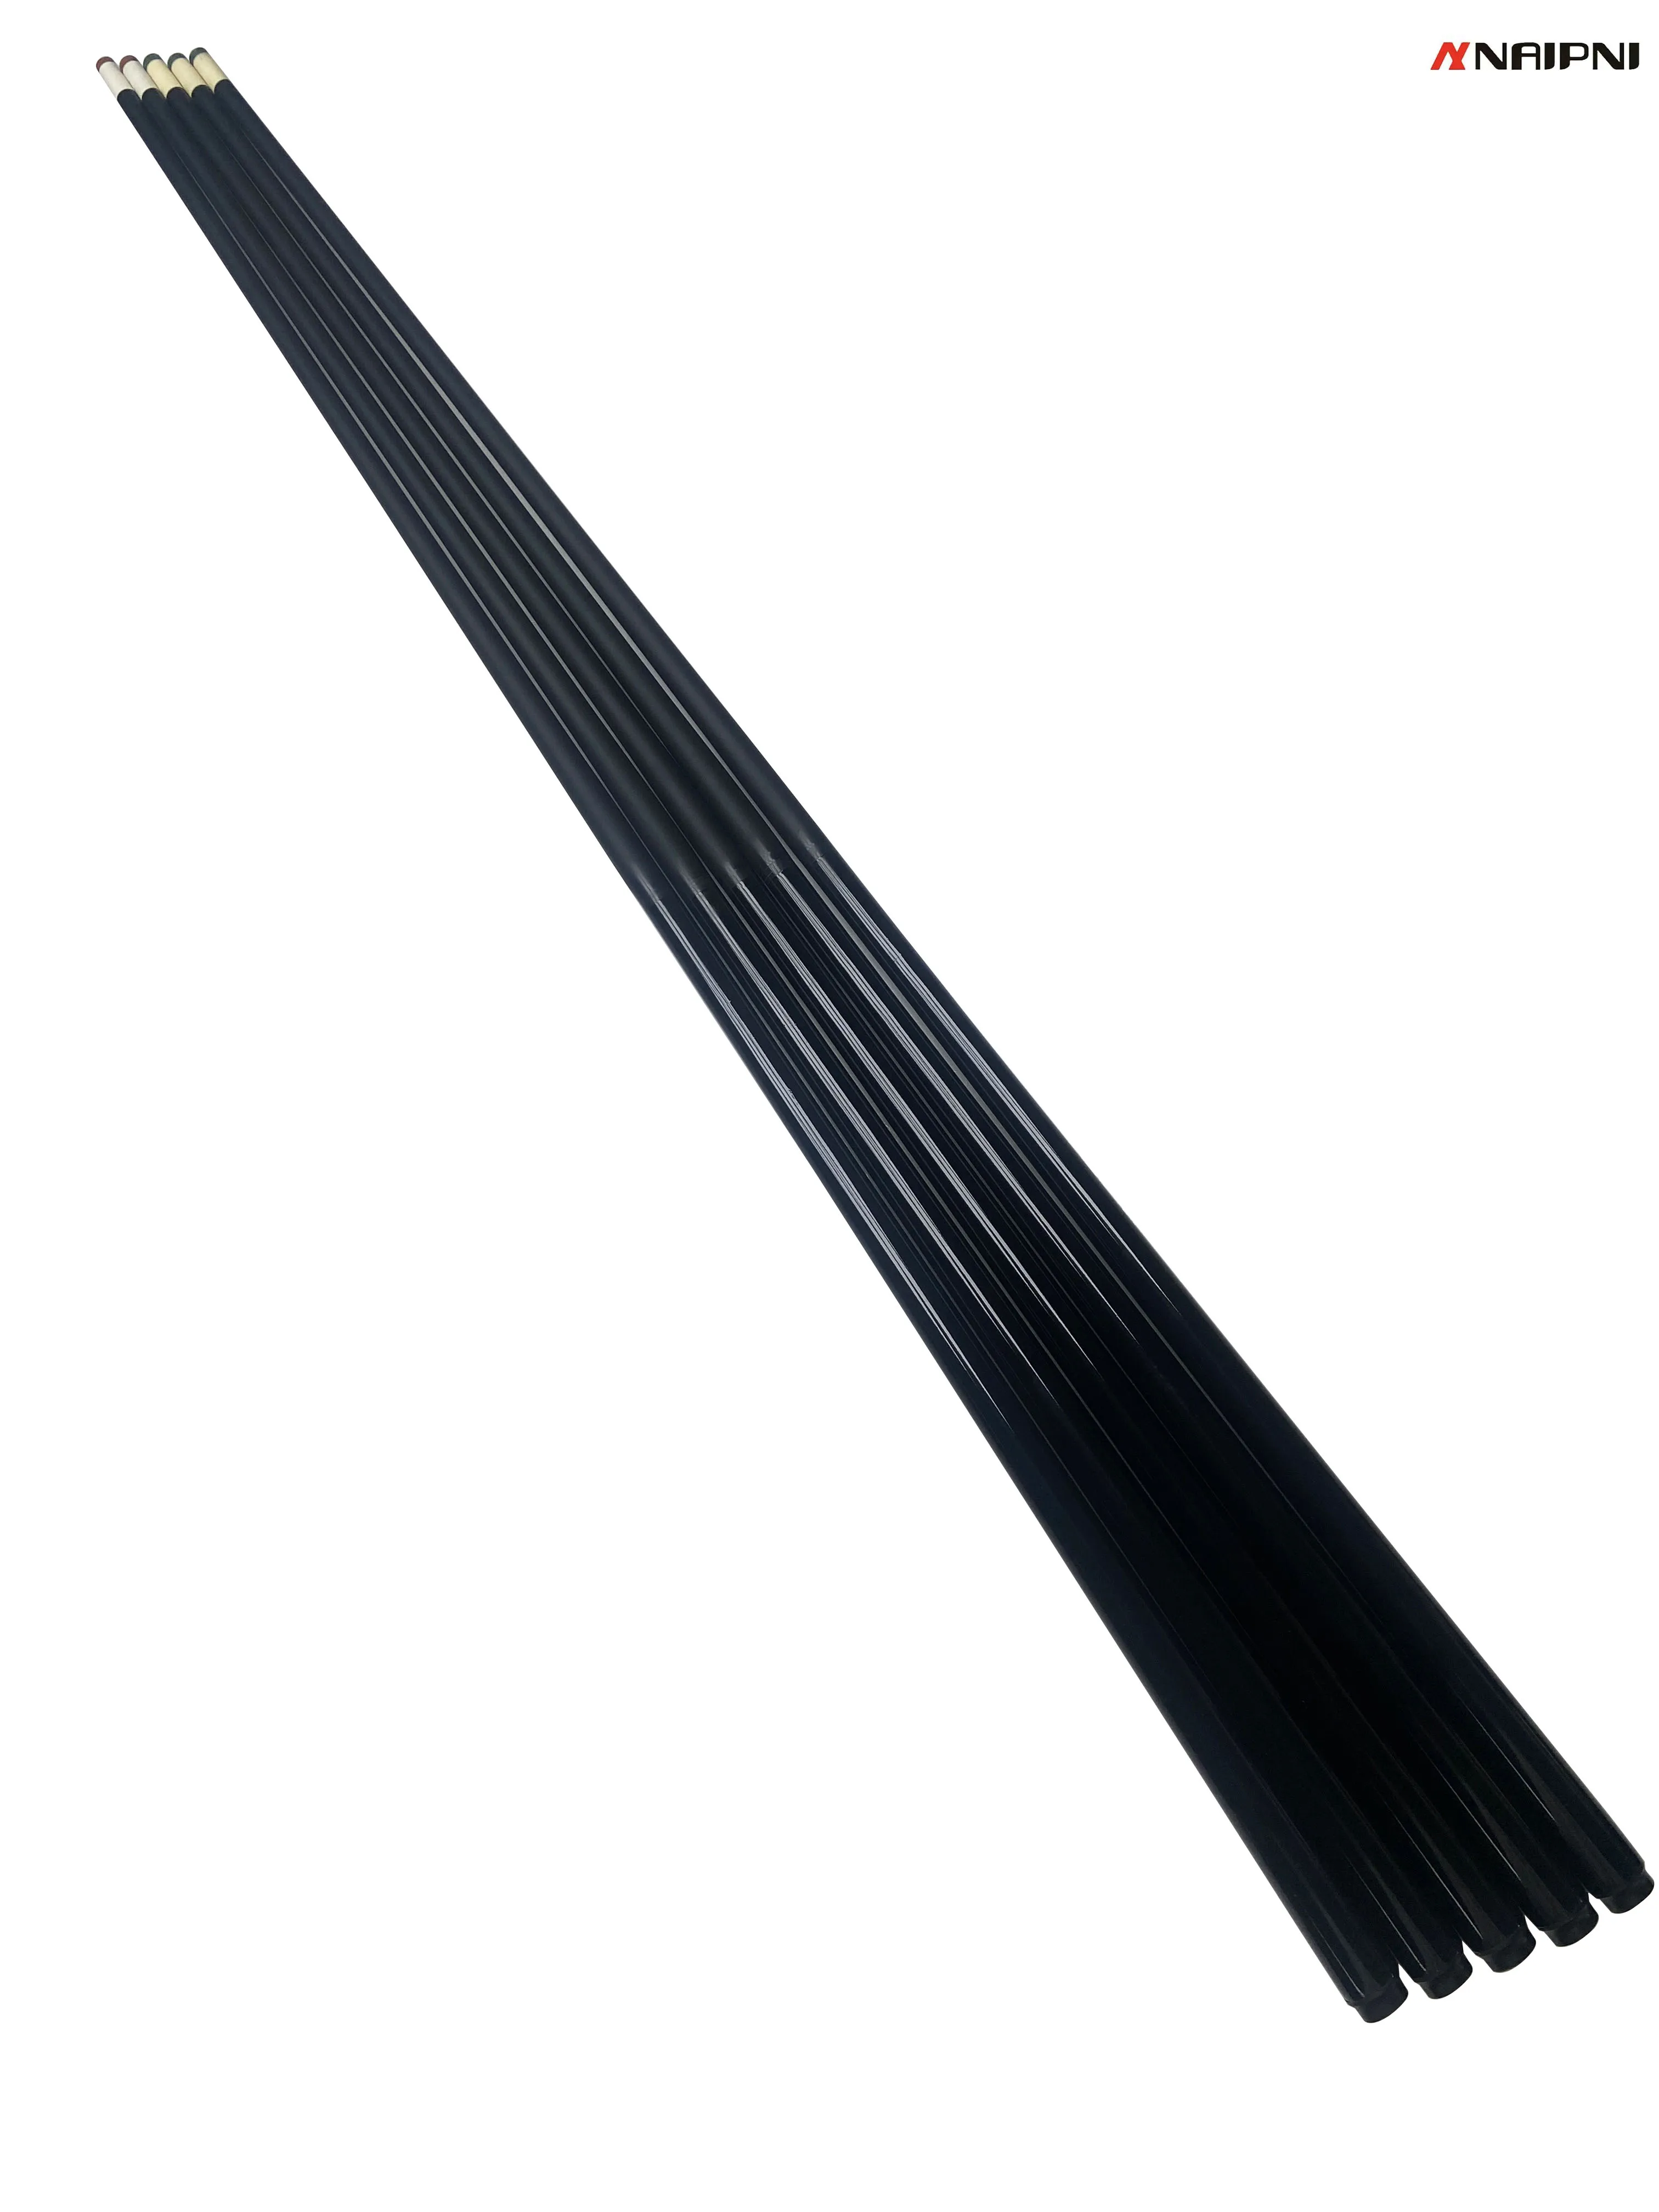 

Бильярдный Кий делится на 1/2 бильярдный кий, длина бильярдного кия 130 мм, диаметр наконечника 13 мм, материал из углеродного волокна